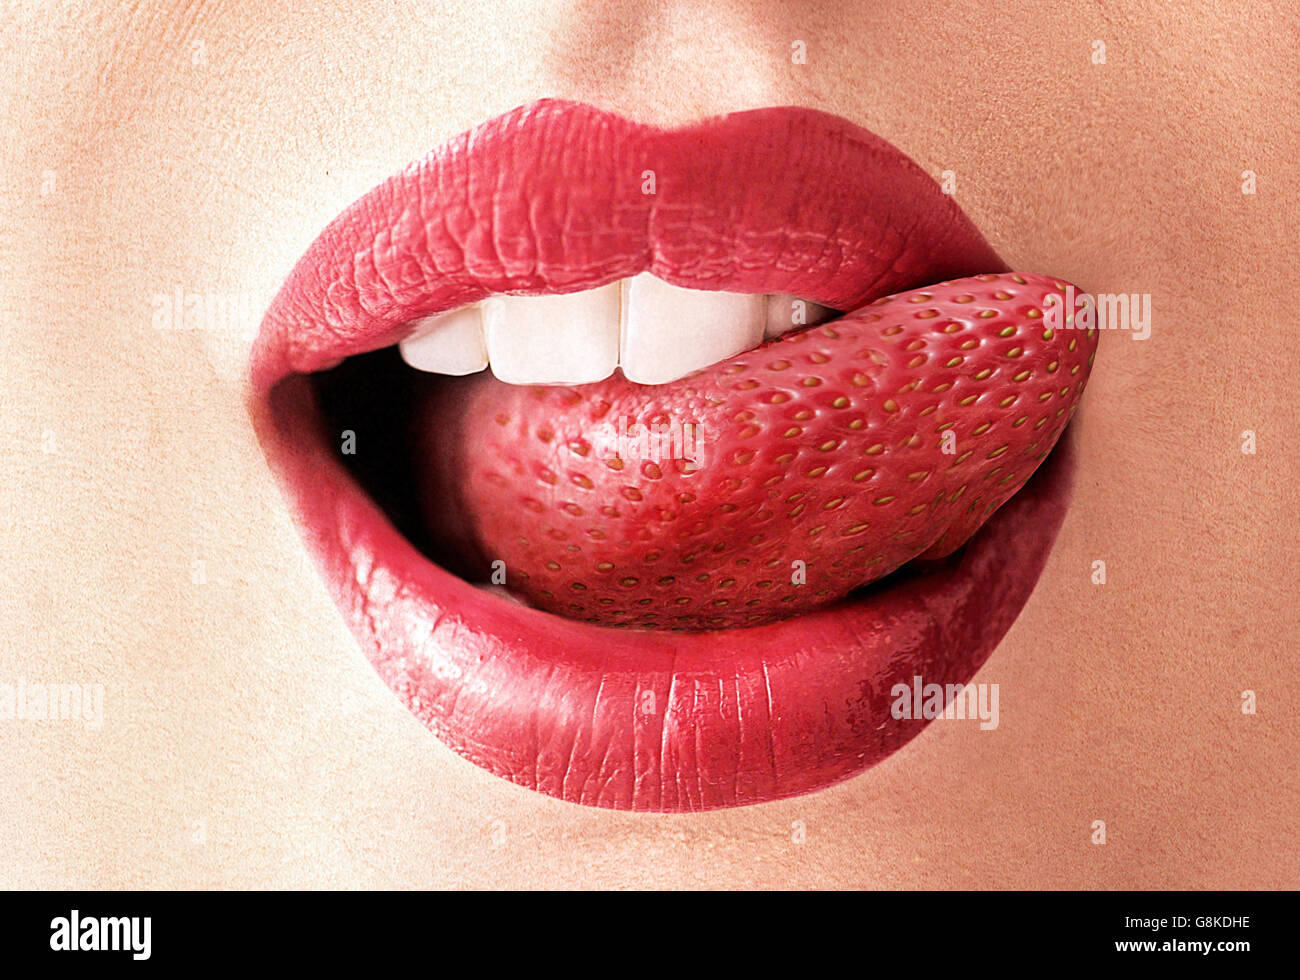 Primo piano immagine di una fragola rossa lingua Foto Stock